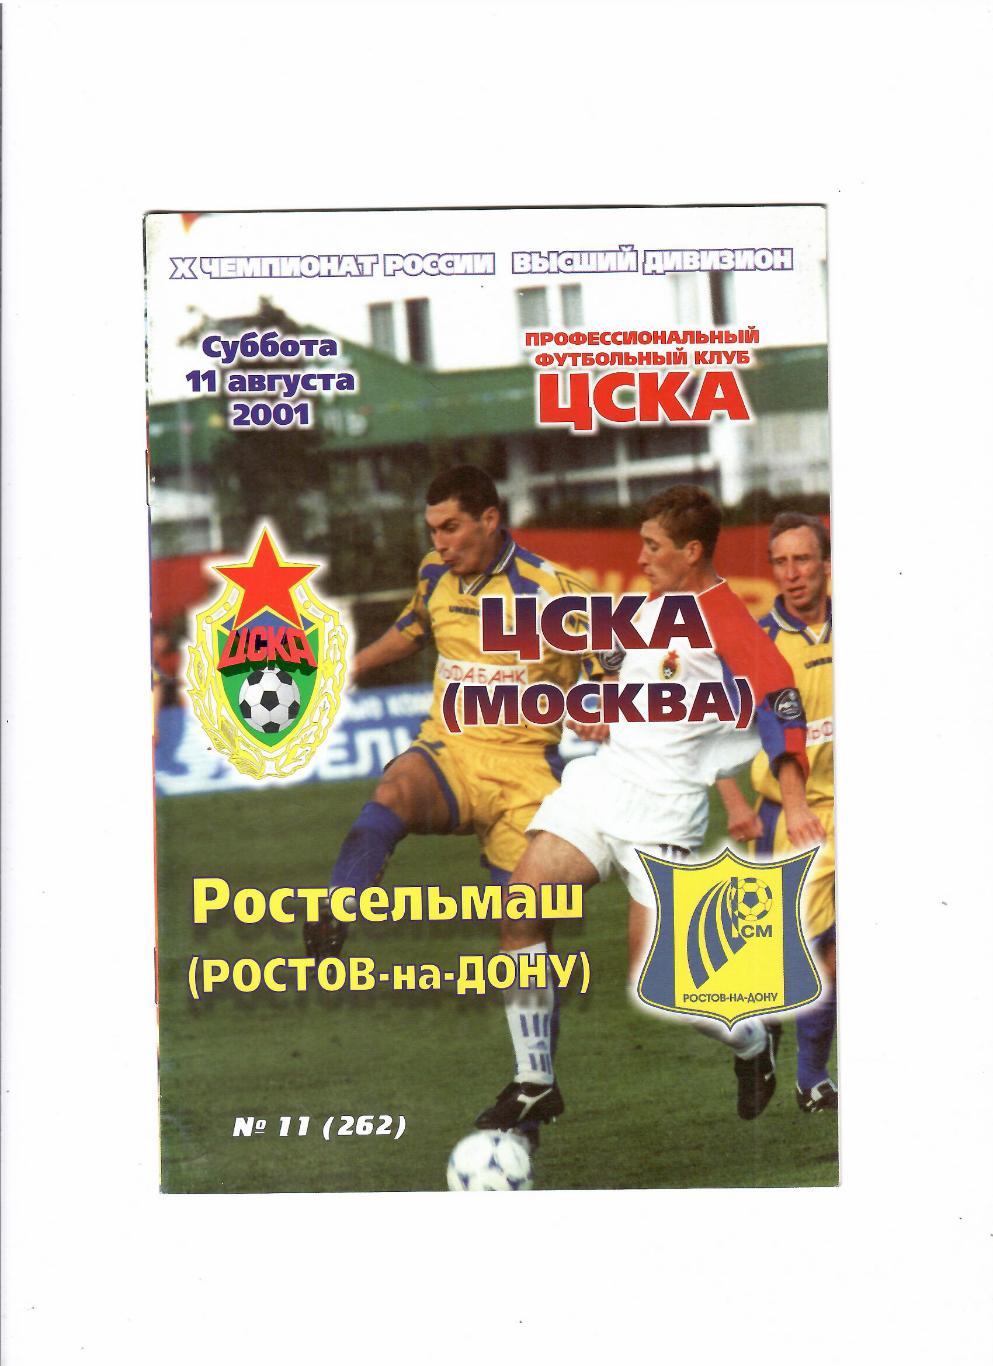 ЦСКА-Ростсельмаш 2001